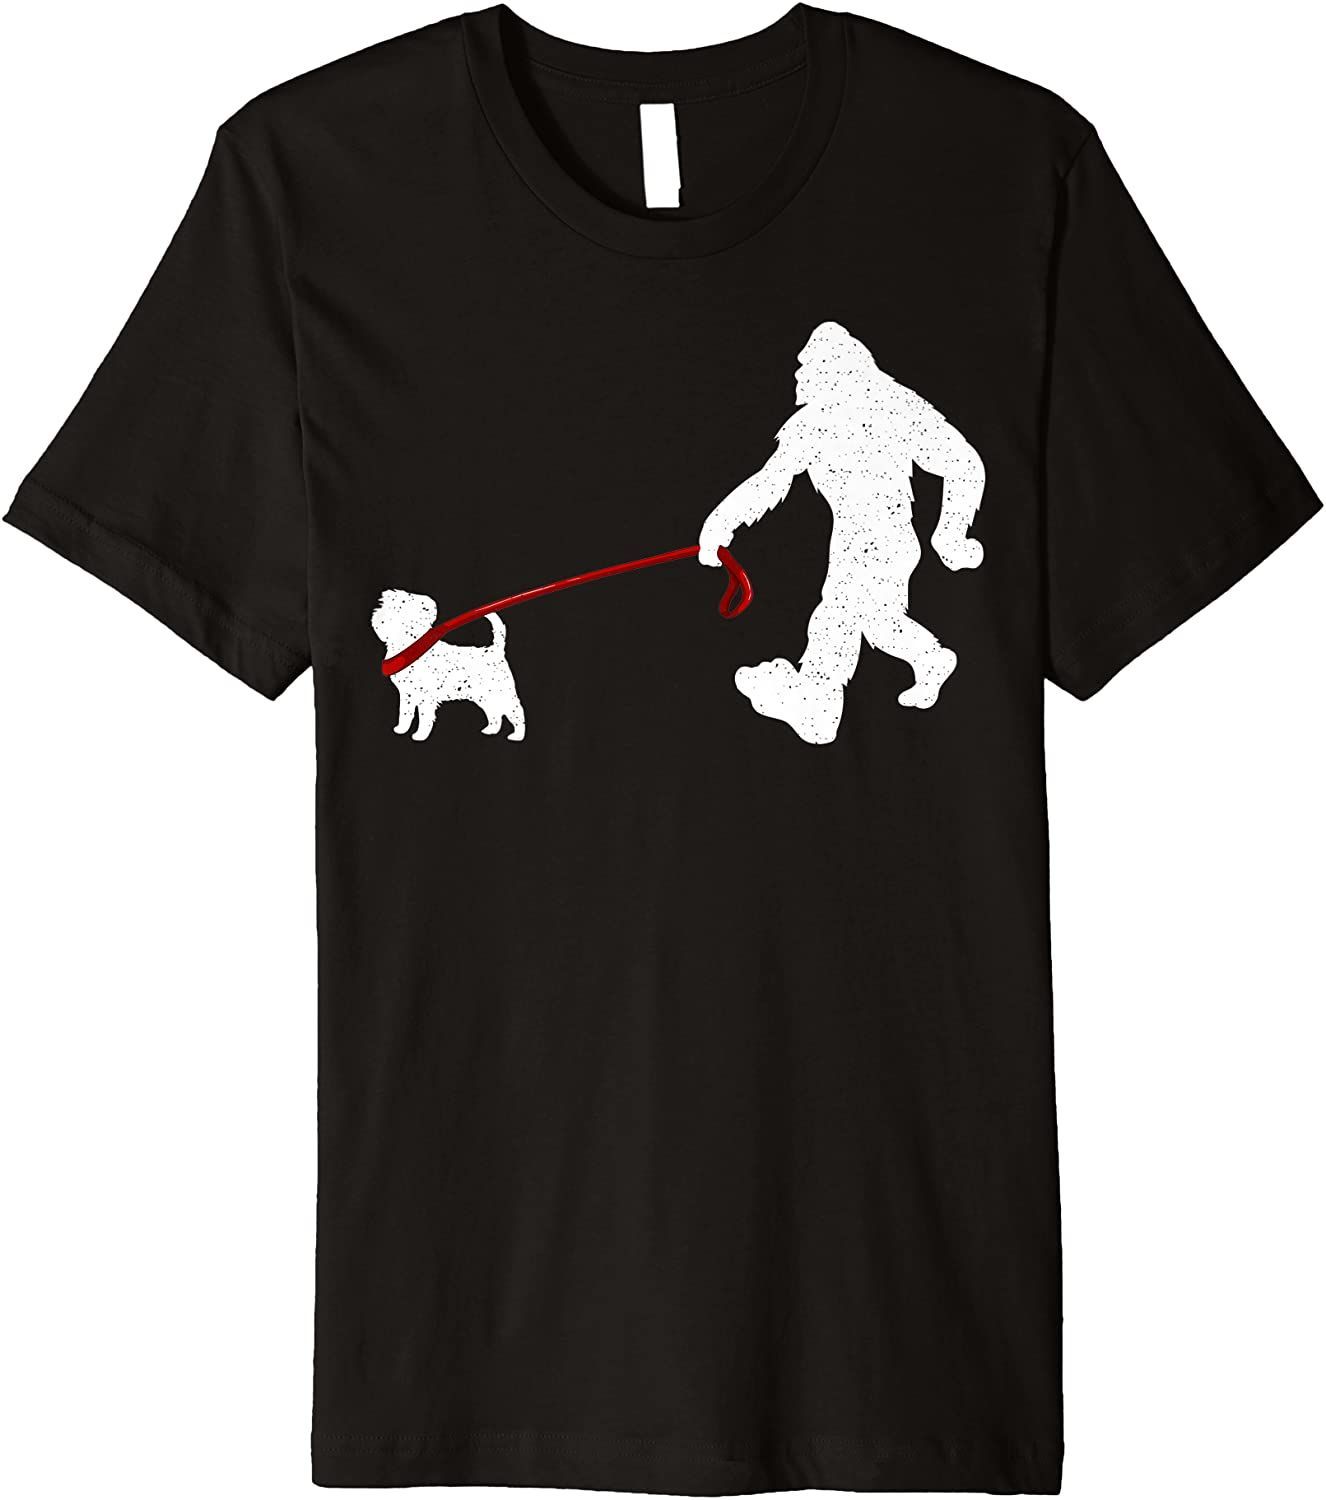 Funny Bigfoot Walking With Affenpinscher Dog T-Shirt